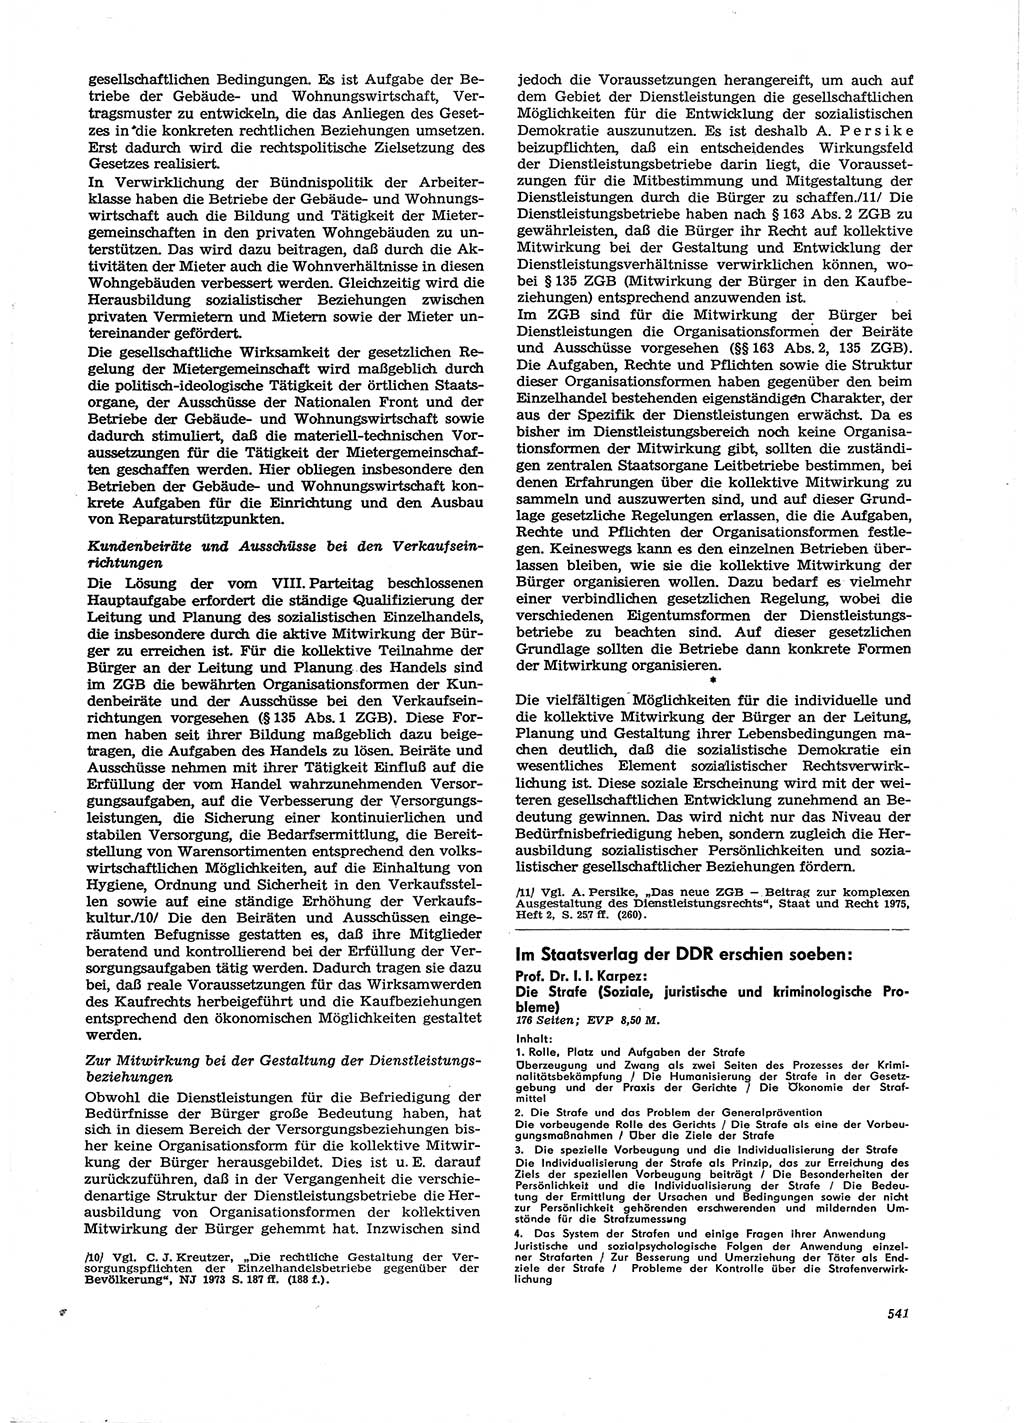 Neue Justiz (NJ), Zeitschrift für Recht und Rechtswissenschaft [Deutsche Demokratische Republik (DDR)], 29. Jahrgang 1975, Seite 541 (NJ DDR 1975, S. 541)